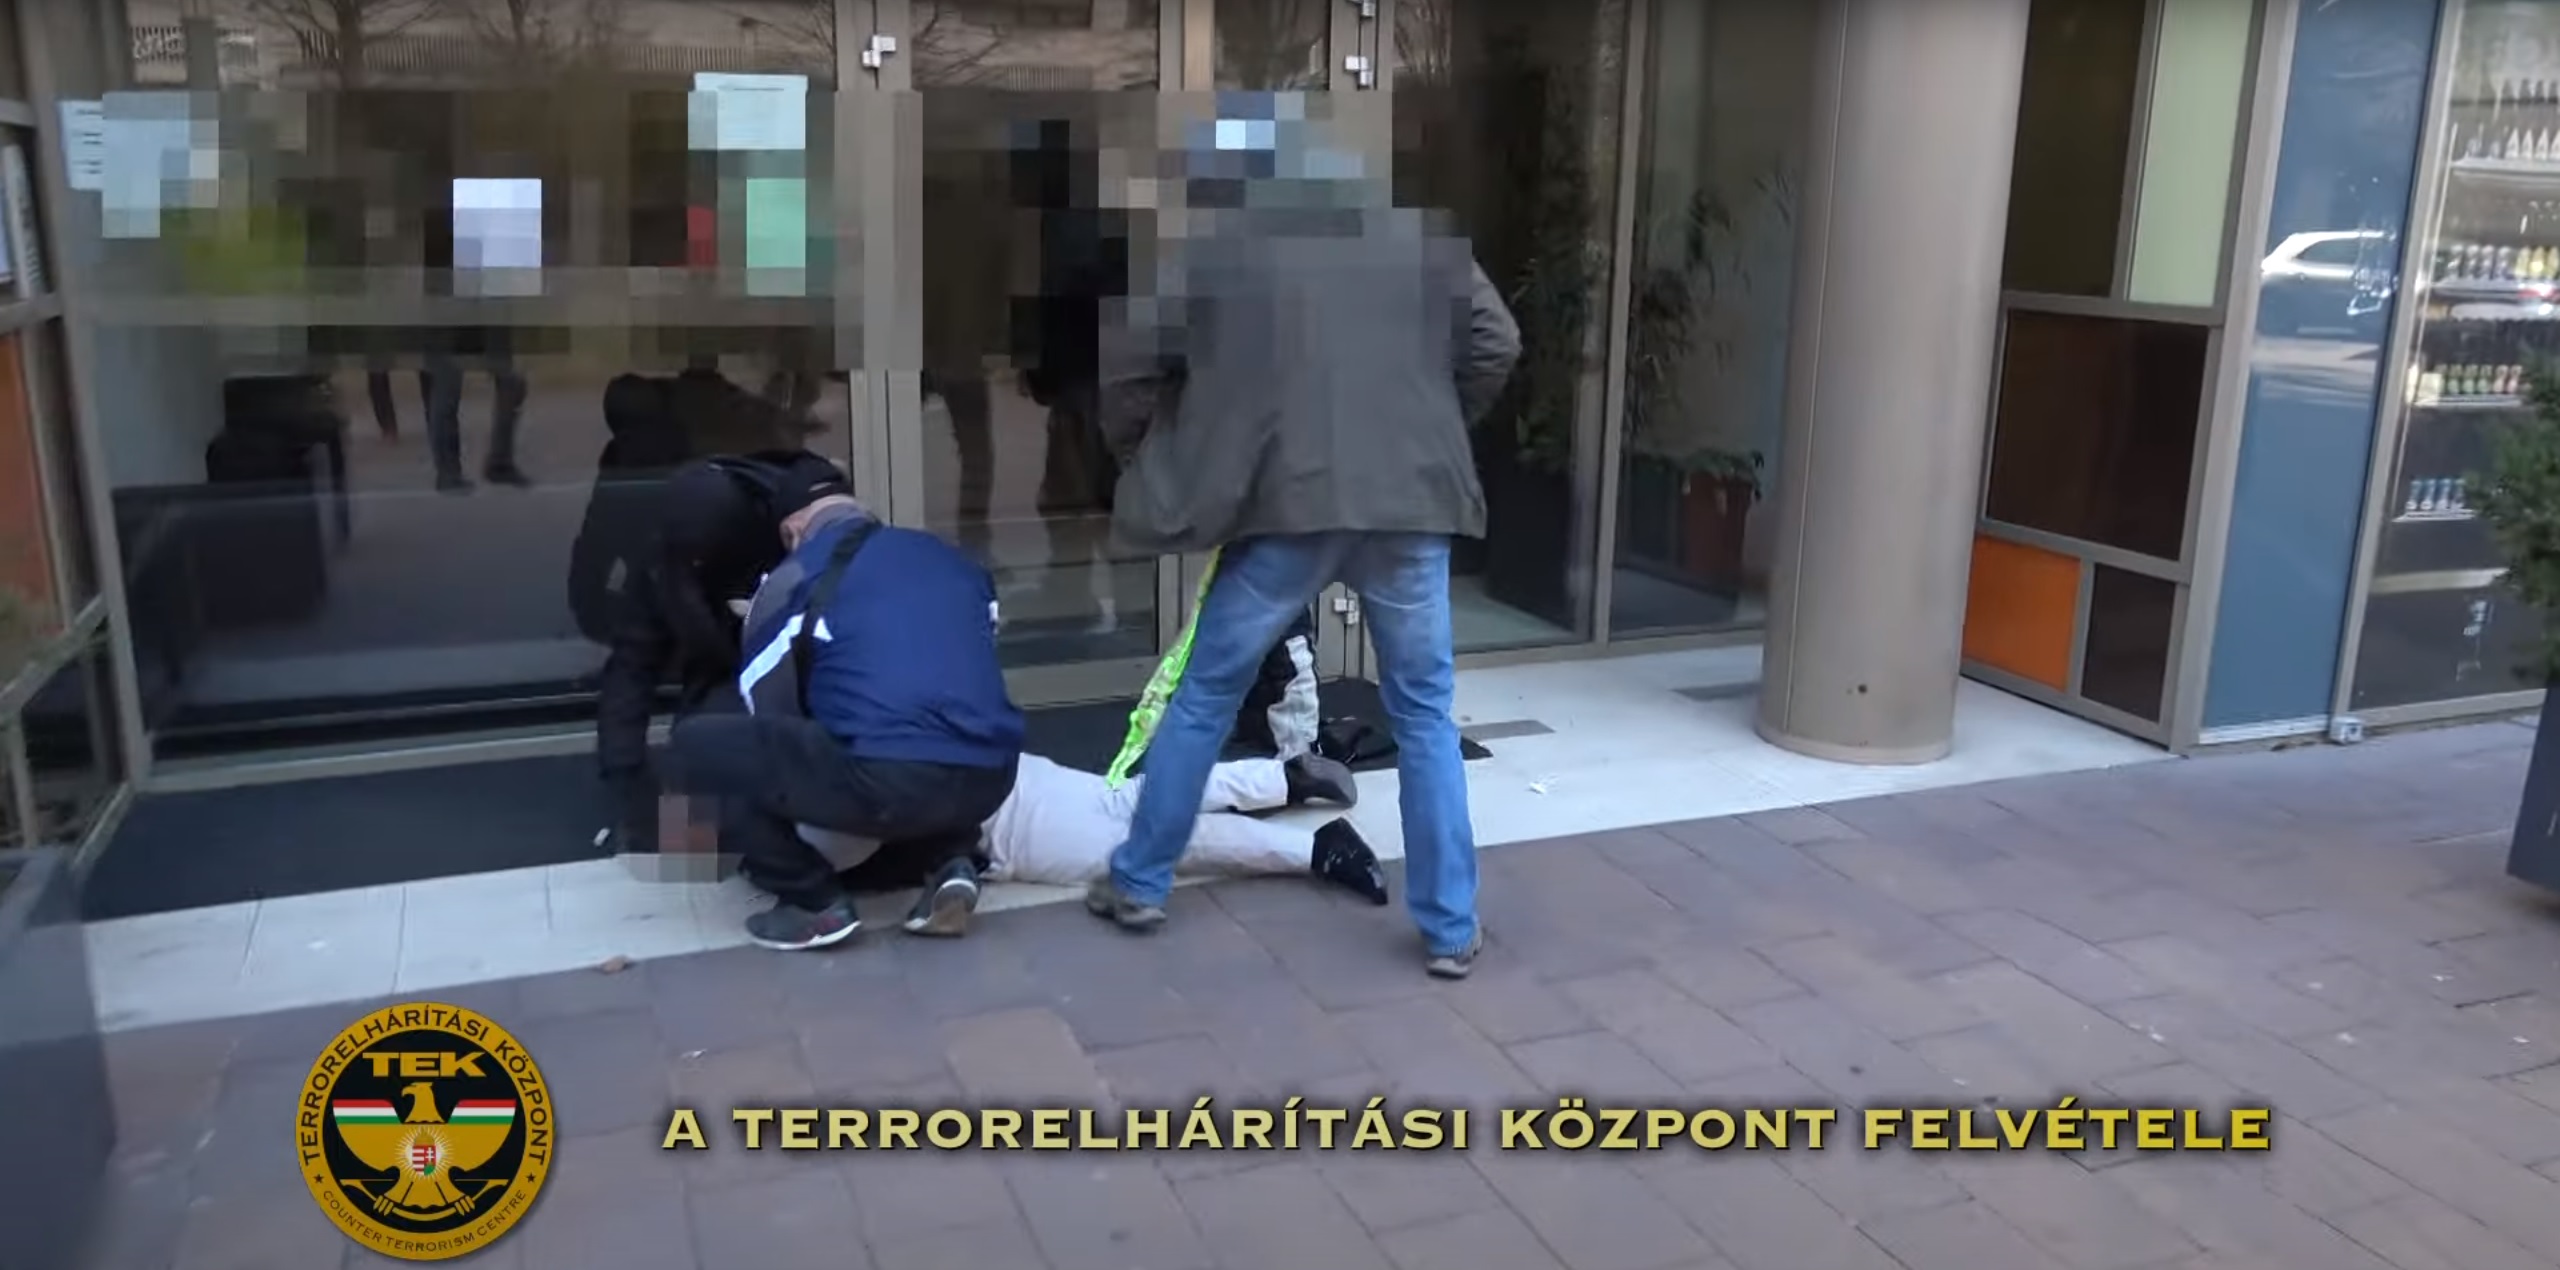 波兰男子因绑架、劫持人质、持械抢劫在布达佩斯被捕